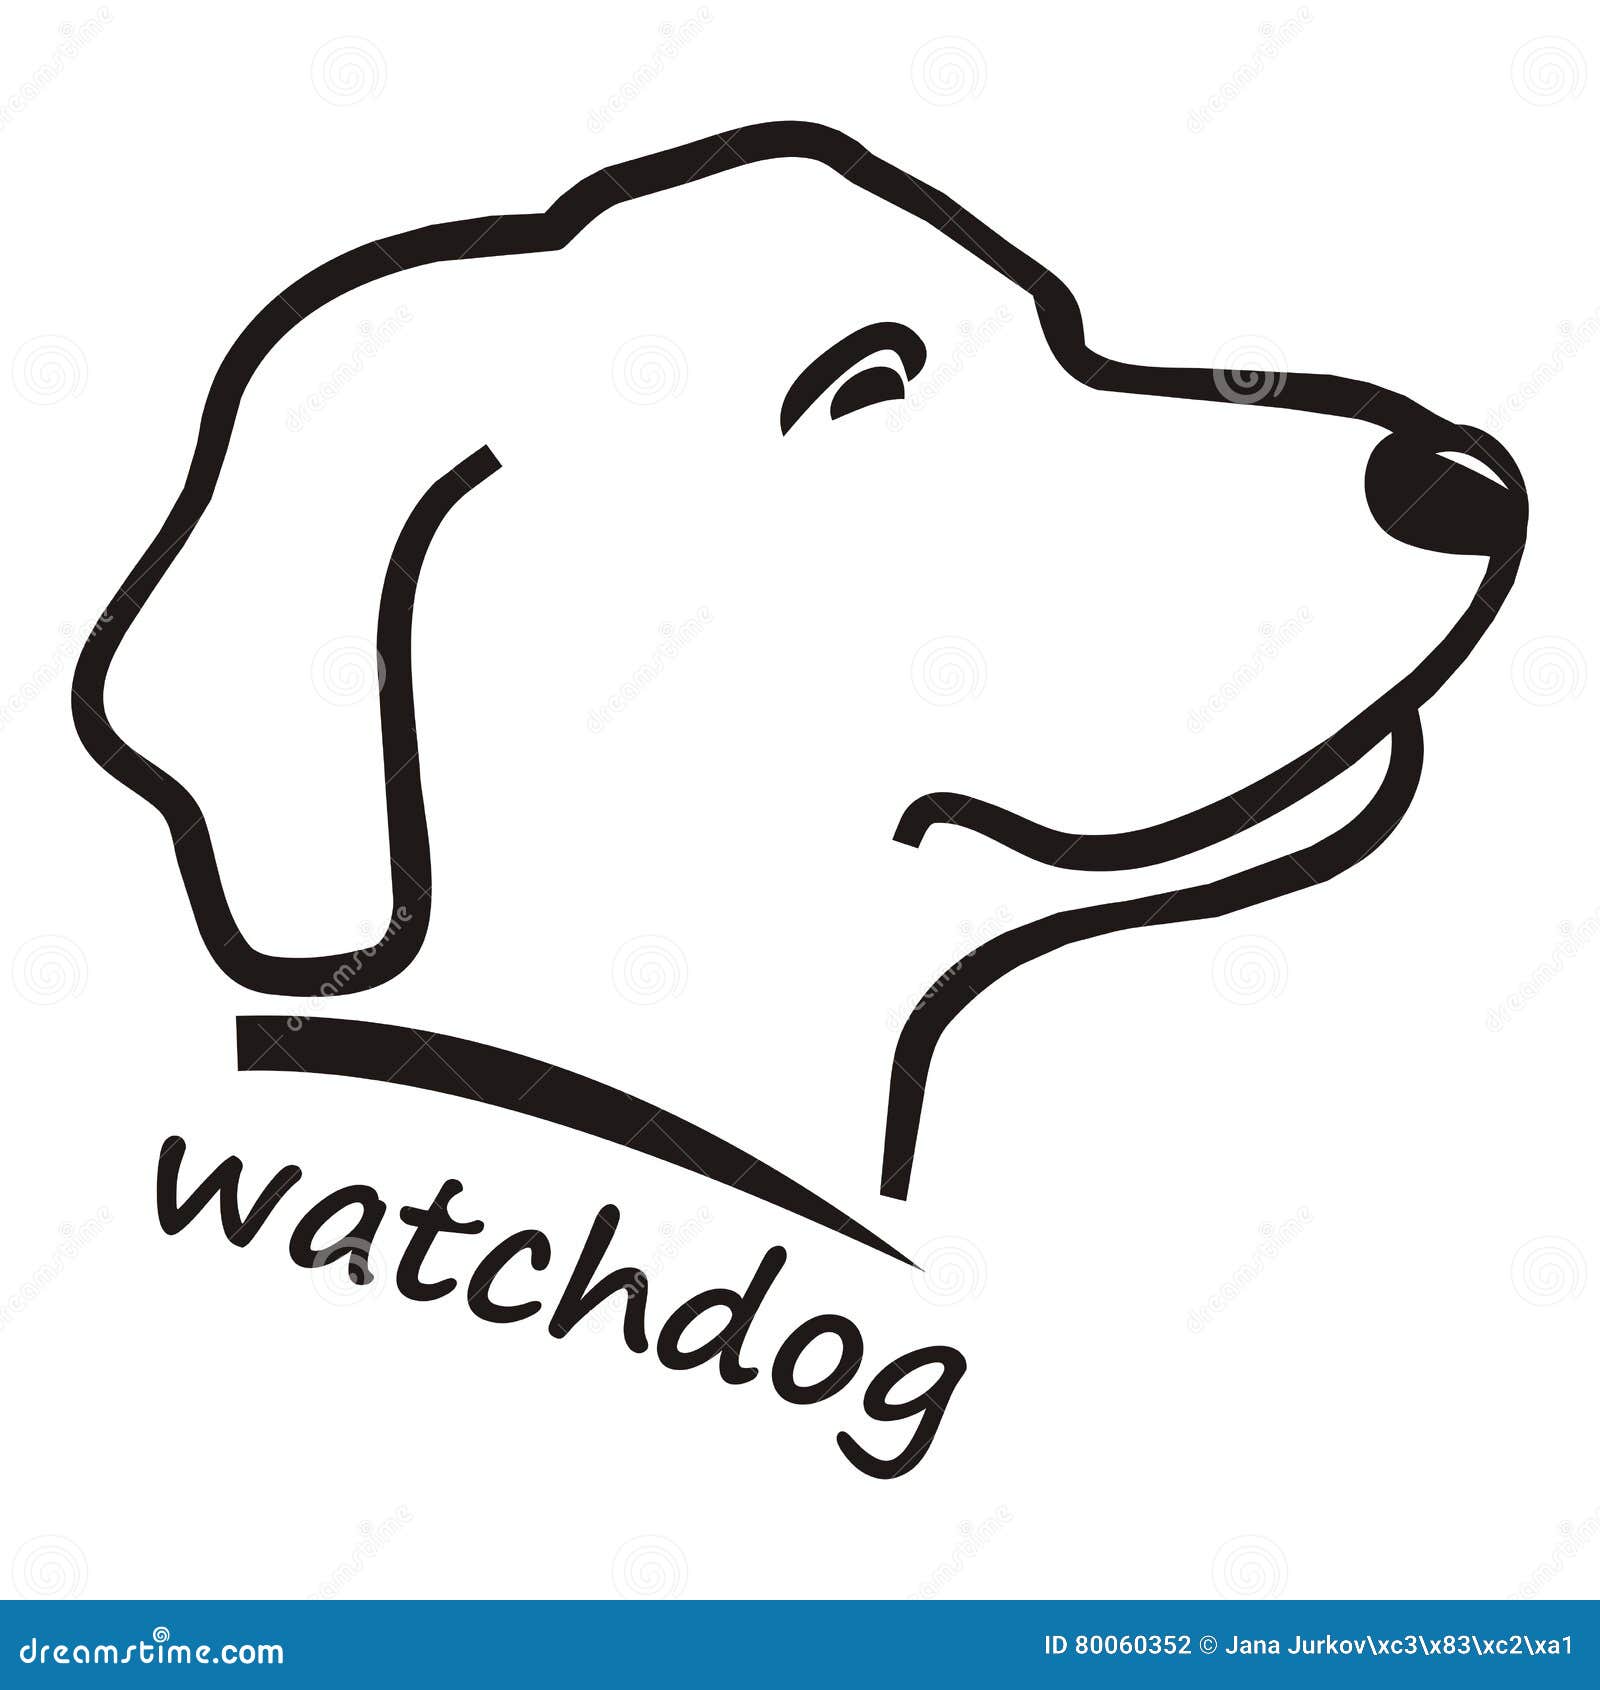 watchdog clipart - photo #30